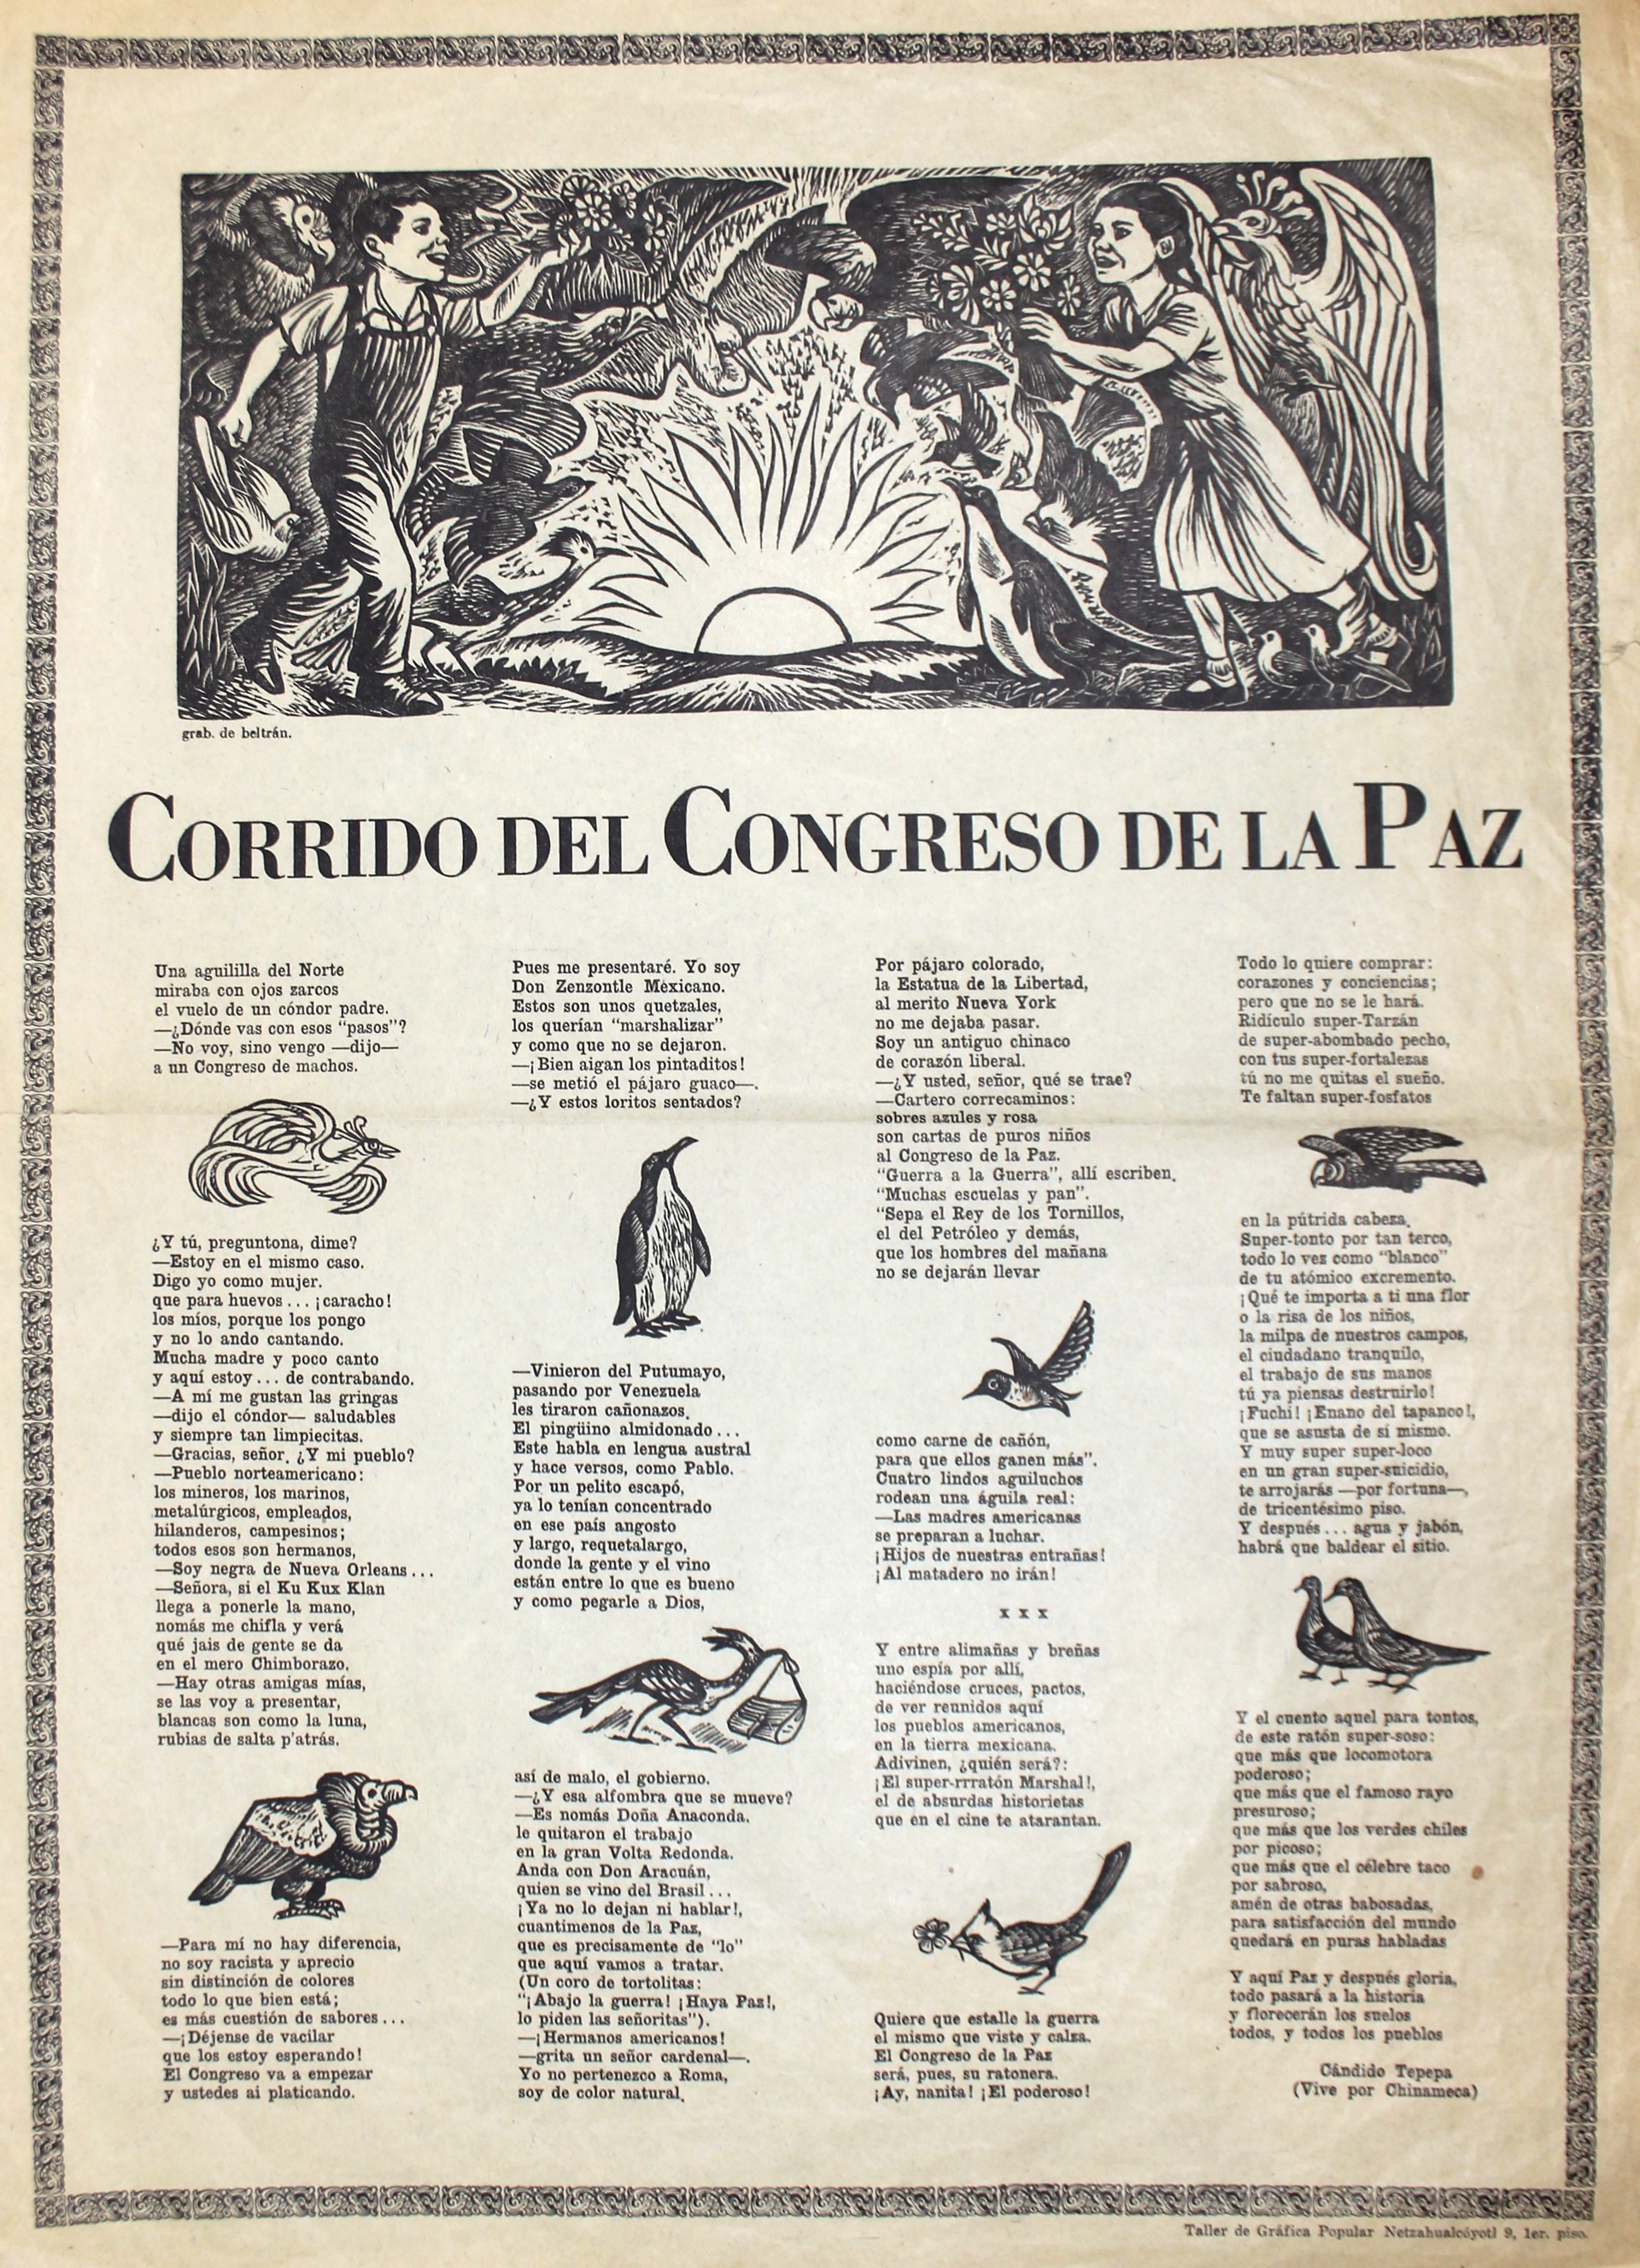 Corrido del Congreso de la Paz (Corrido of the Peace Congress) by Alberto Beltrán